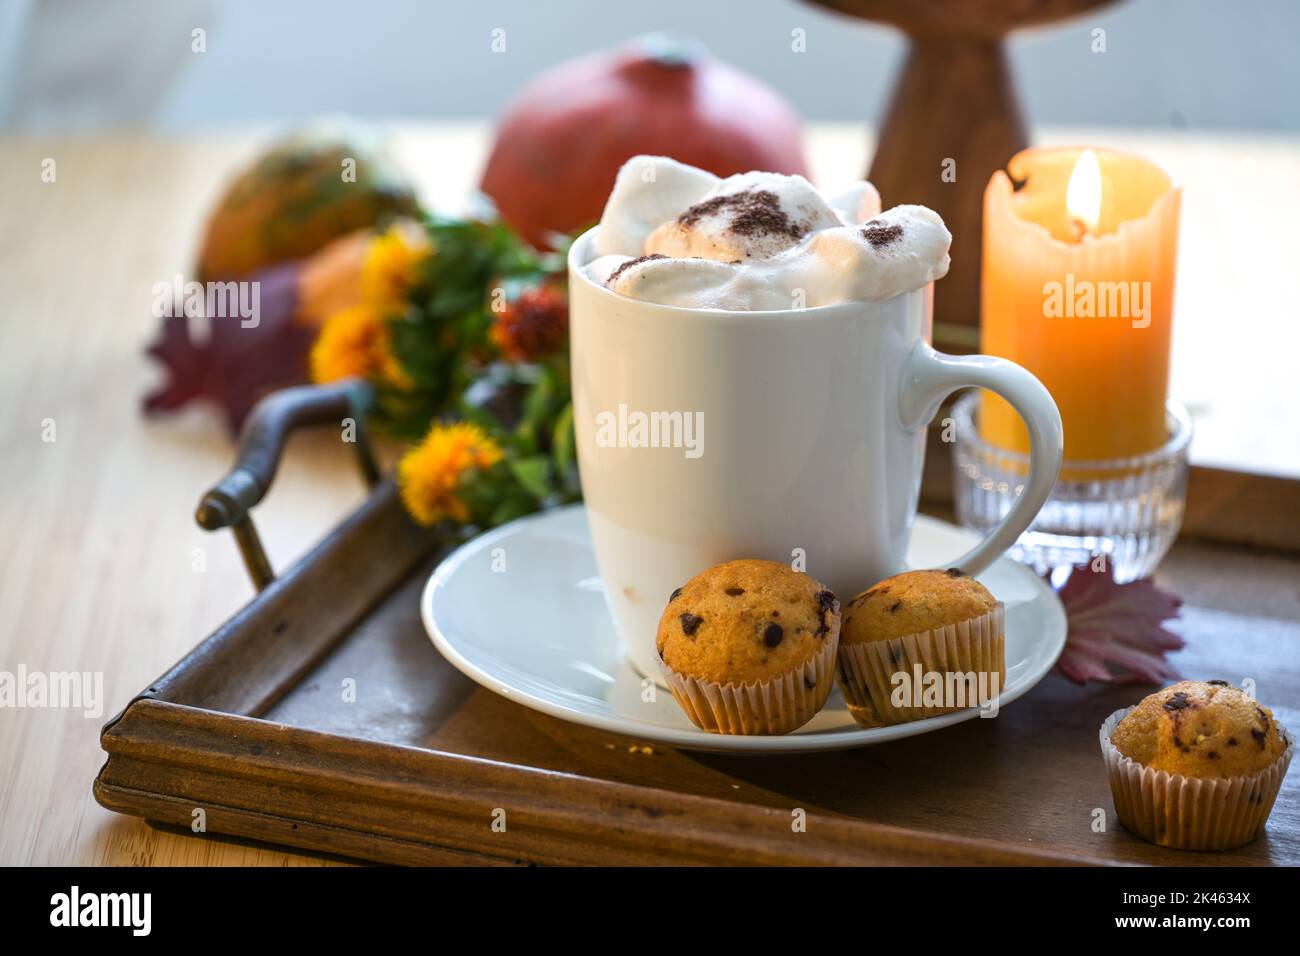 Tazza bianca con bevanda calda al cioccolato e marshmallow in fusione, muffin, candela e decorazione autunnale su un tavolo, spazio copia, focus selezionato, profondità stretta Foto Stock